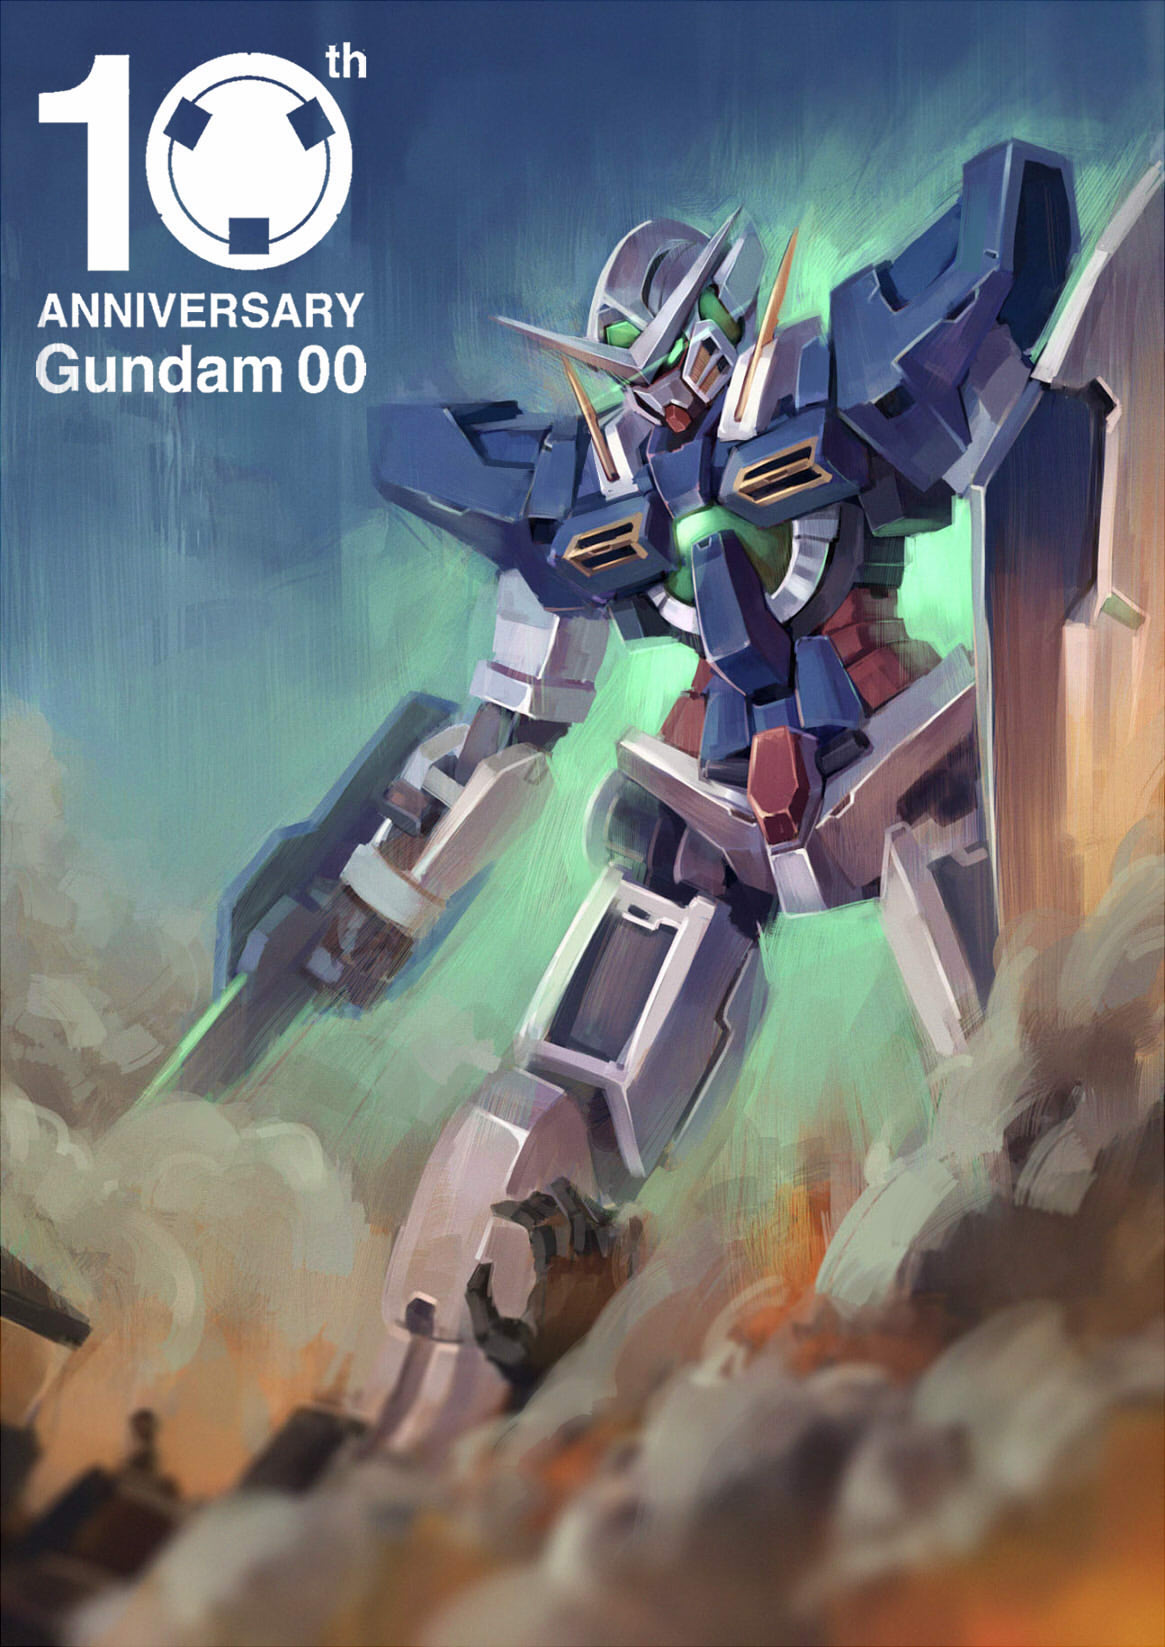 Anime Mechs Super Robot Taisen Gundam Mobile Suit Gundam 00 Gundam Exia Artwork Digital Art Fan Art 1165x1647